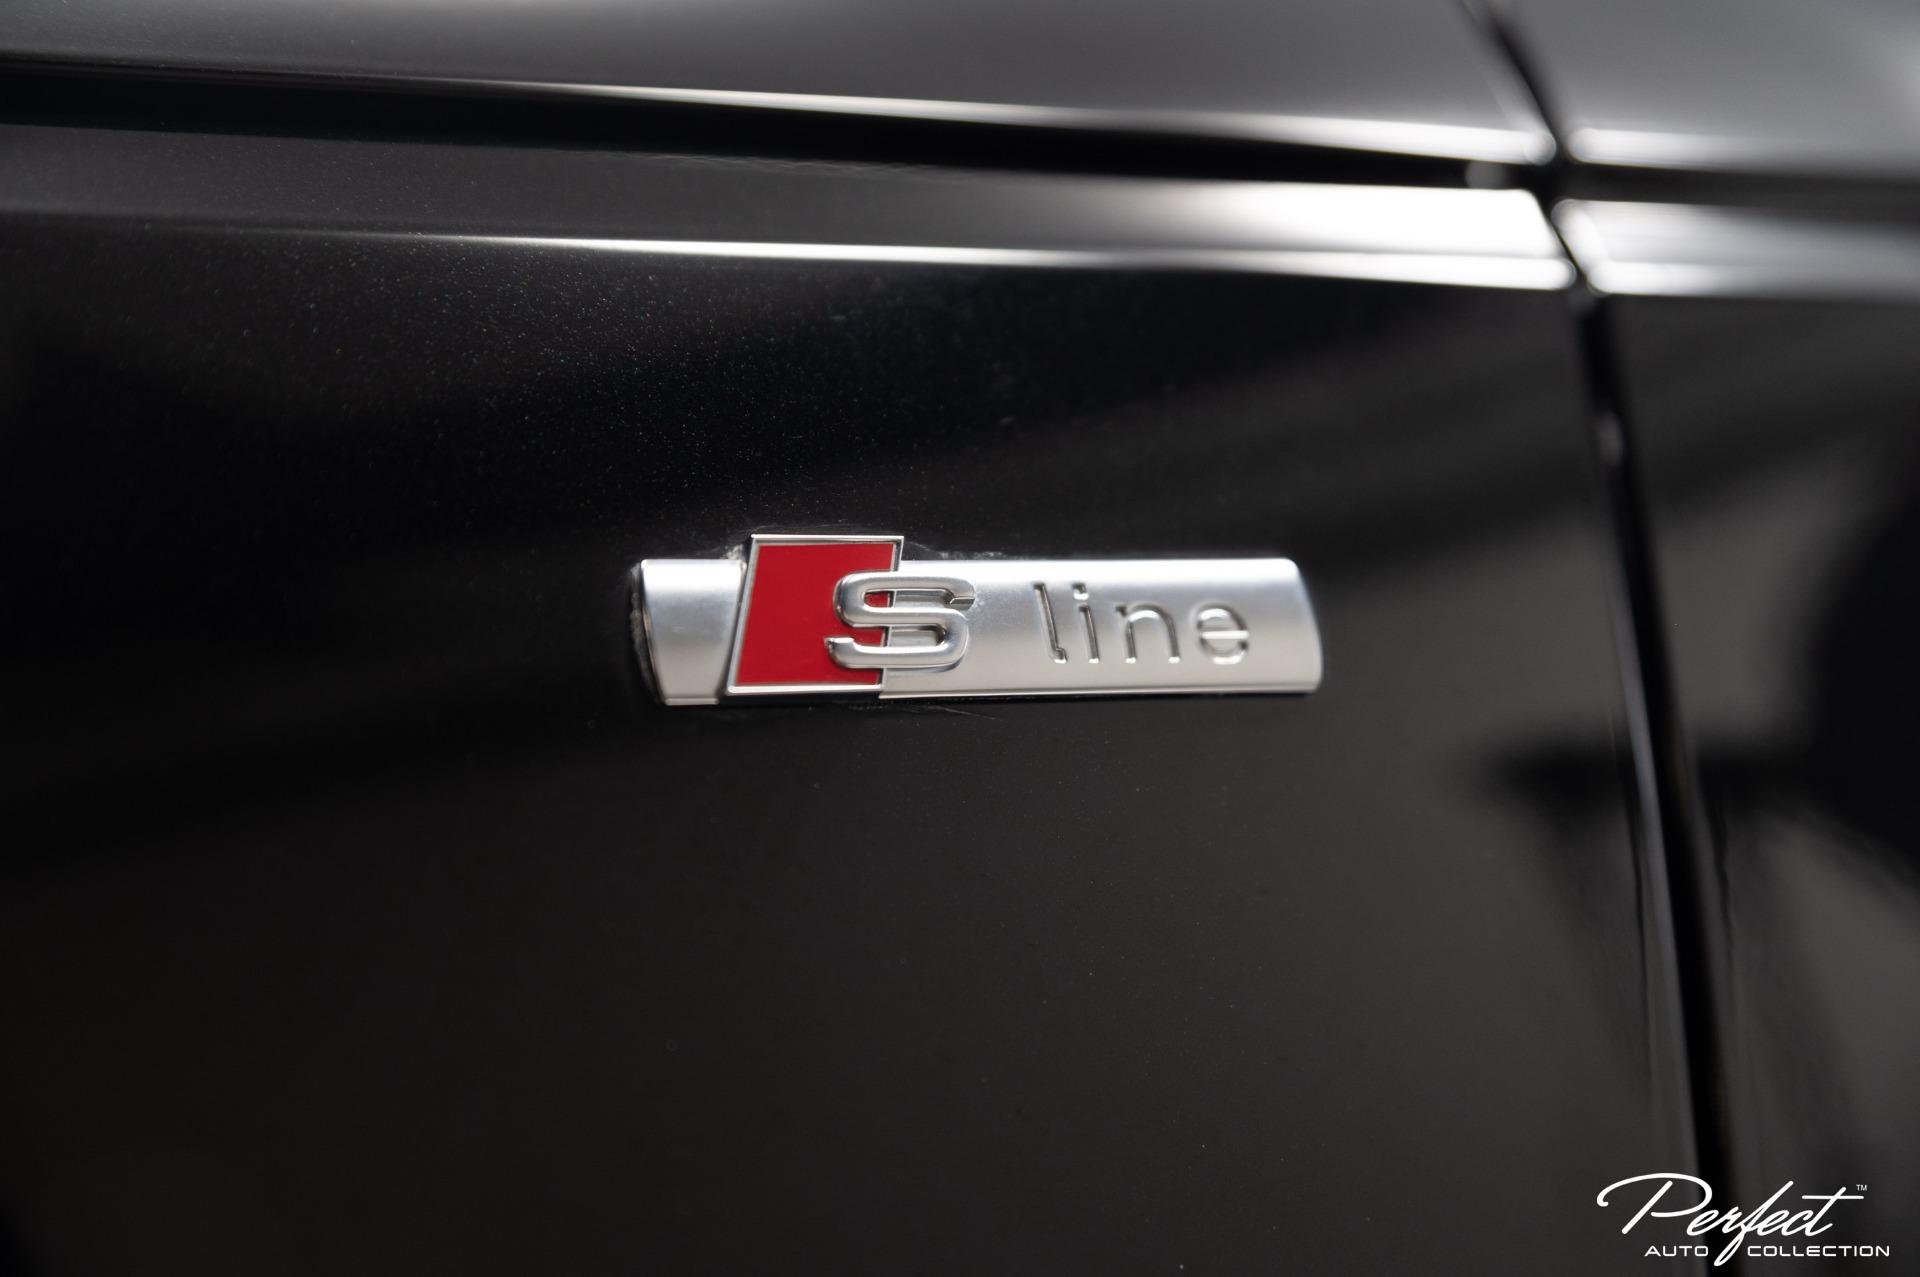 Universal S-Line Audi Fender Badges (Matte Black & Red) – Max Motorsport